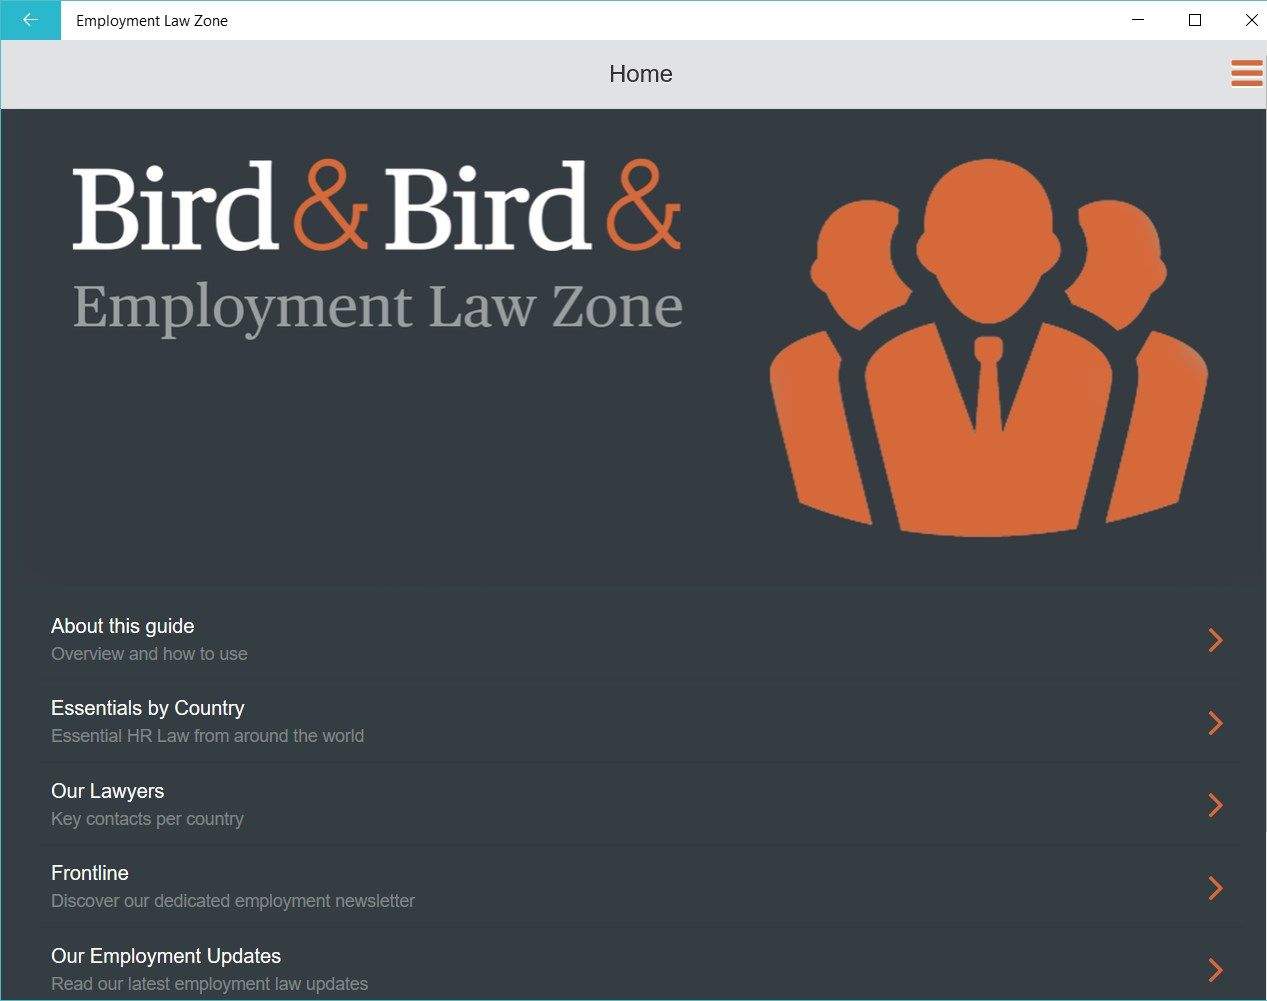 Employment Law Zone